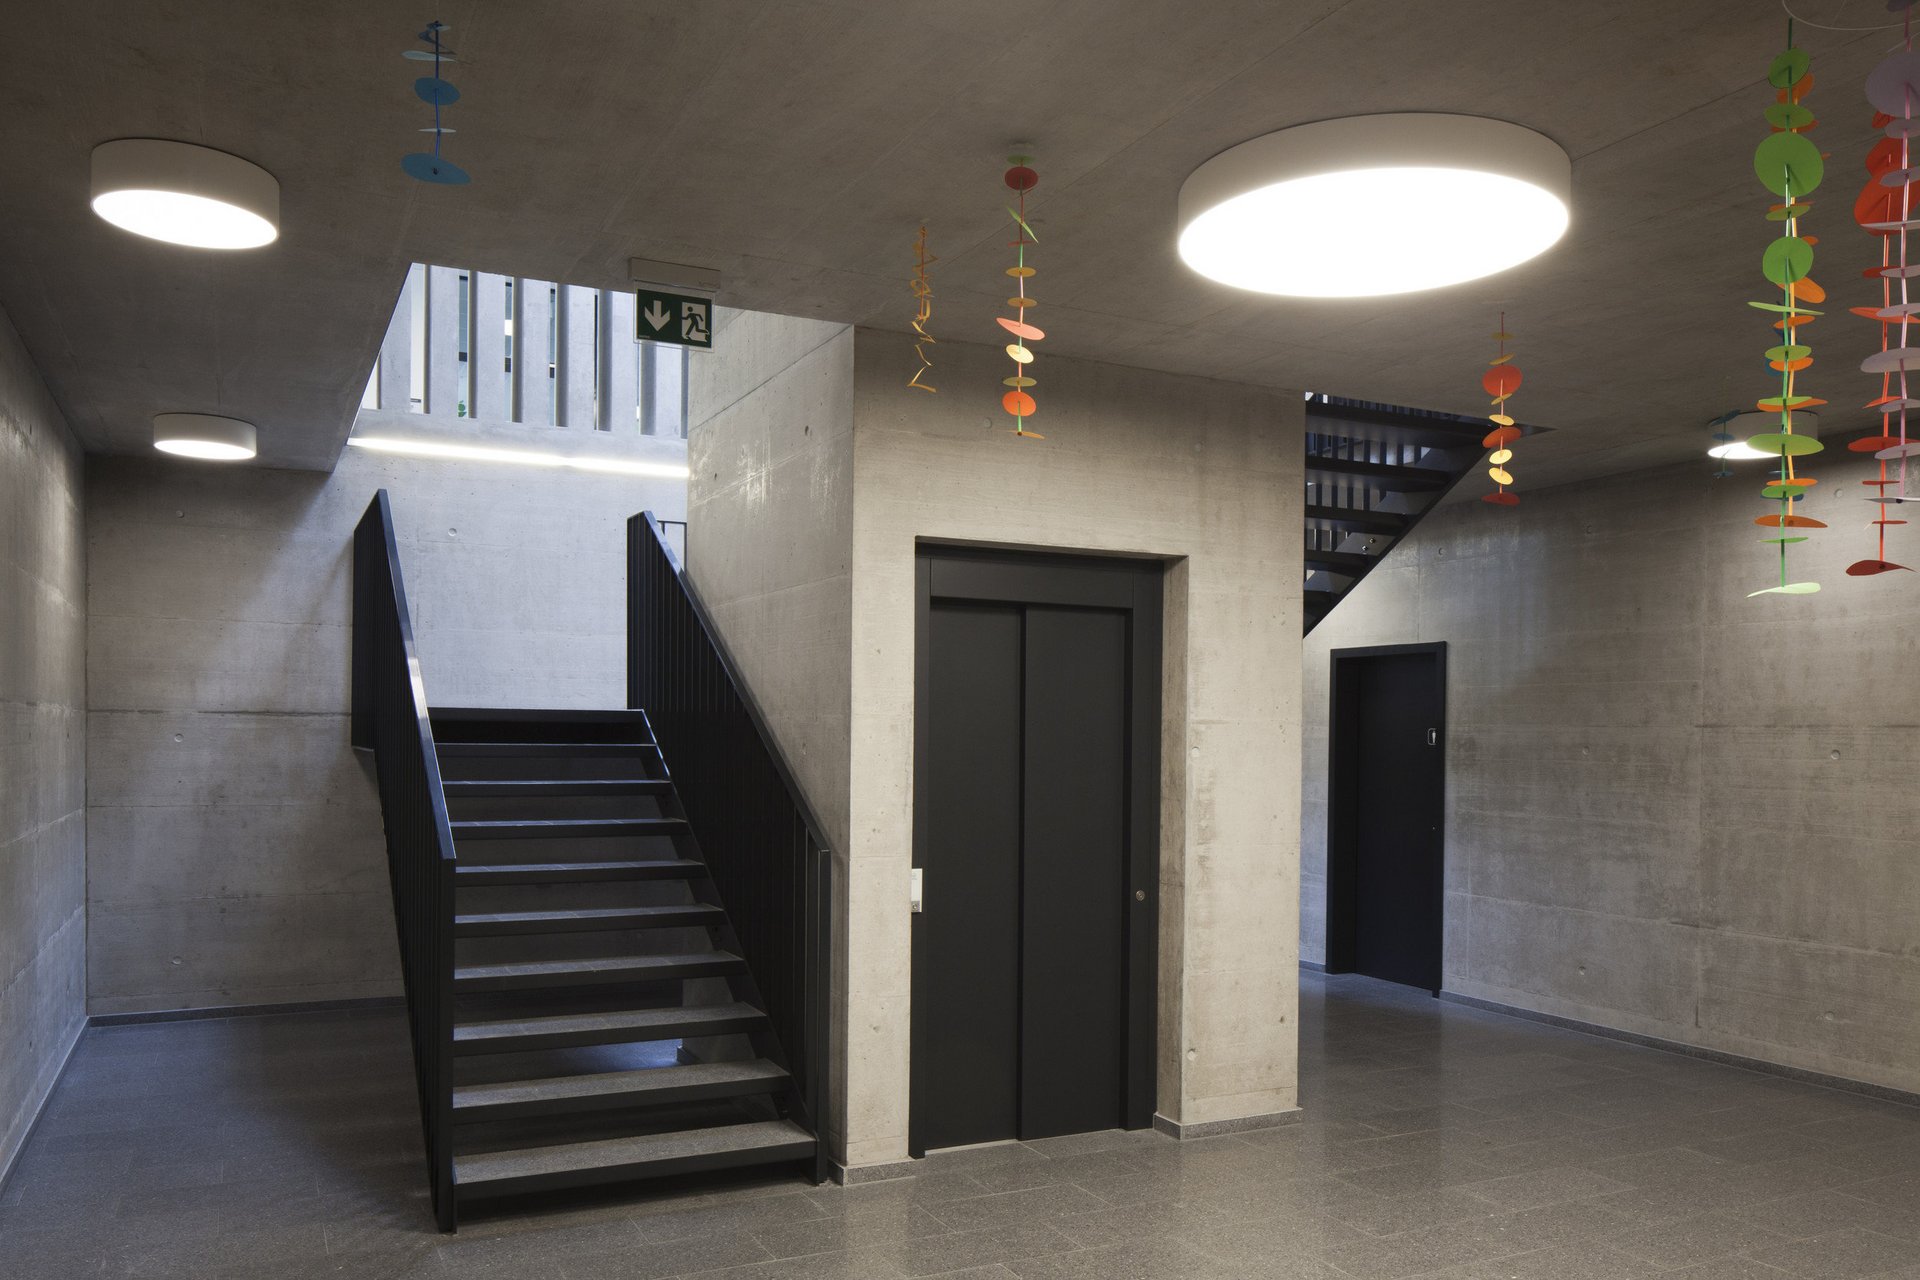 Treppenhaus und Lift in Schulgebäude in modernem Stil